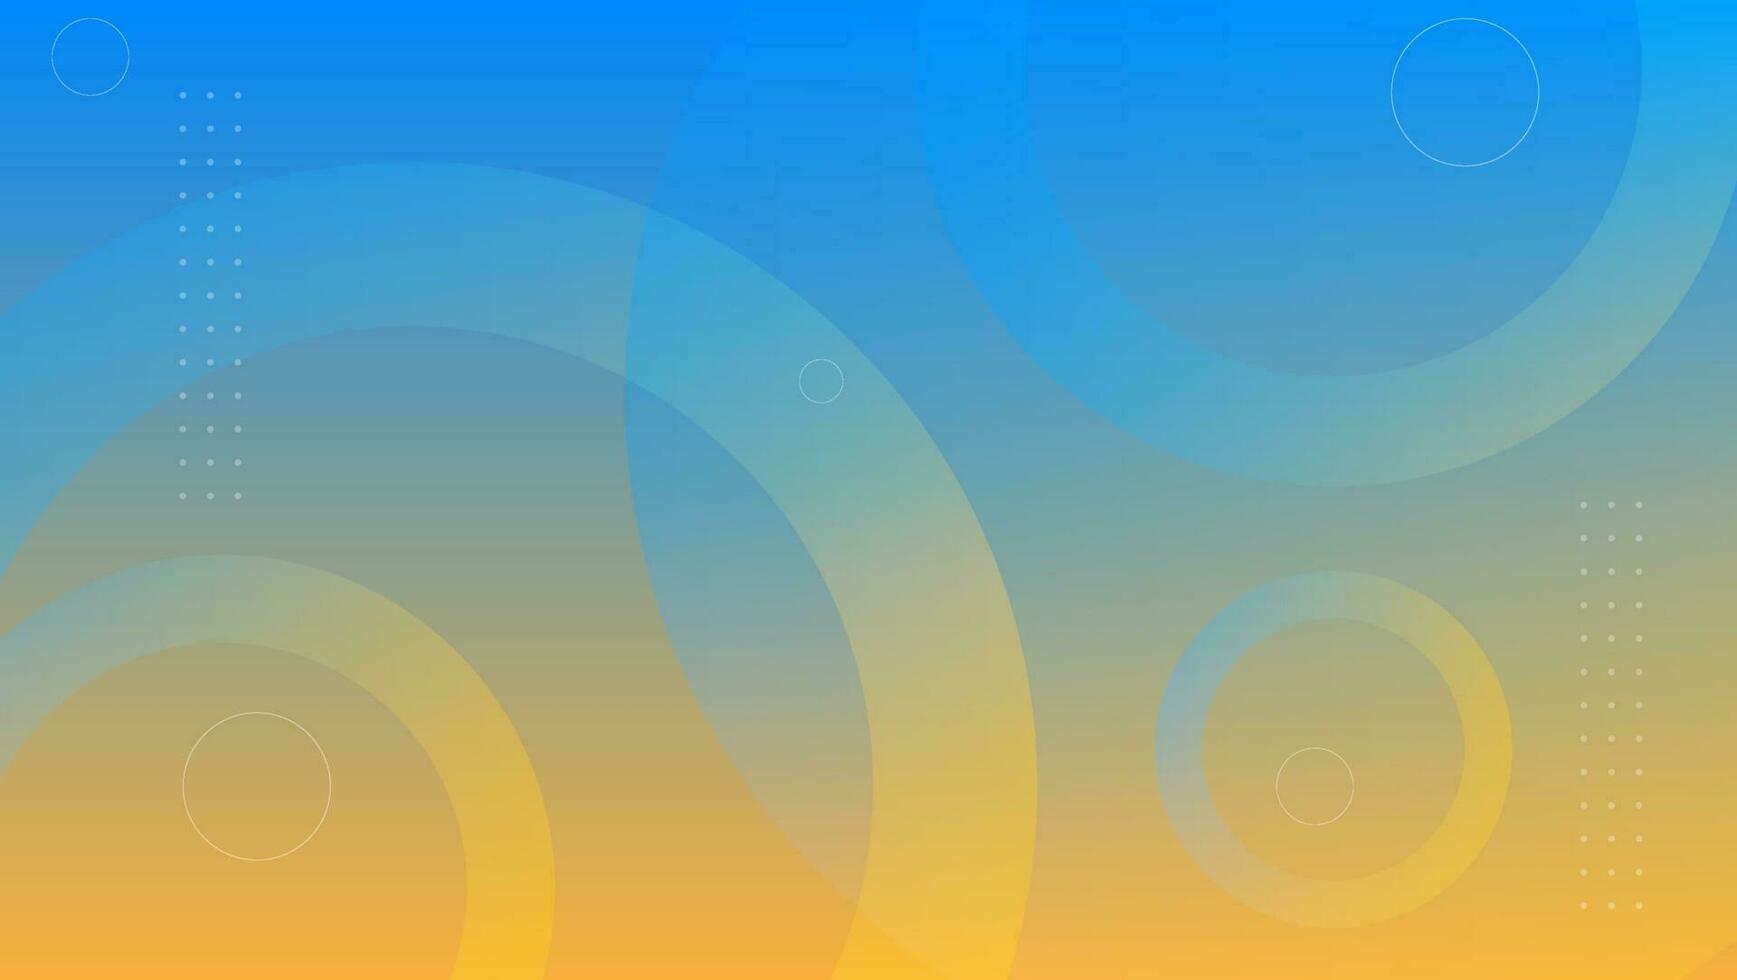 sfondo astratto blu arancione. illustrazione vettoriale